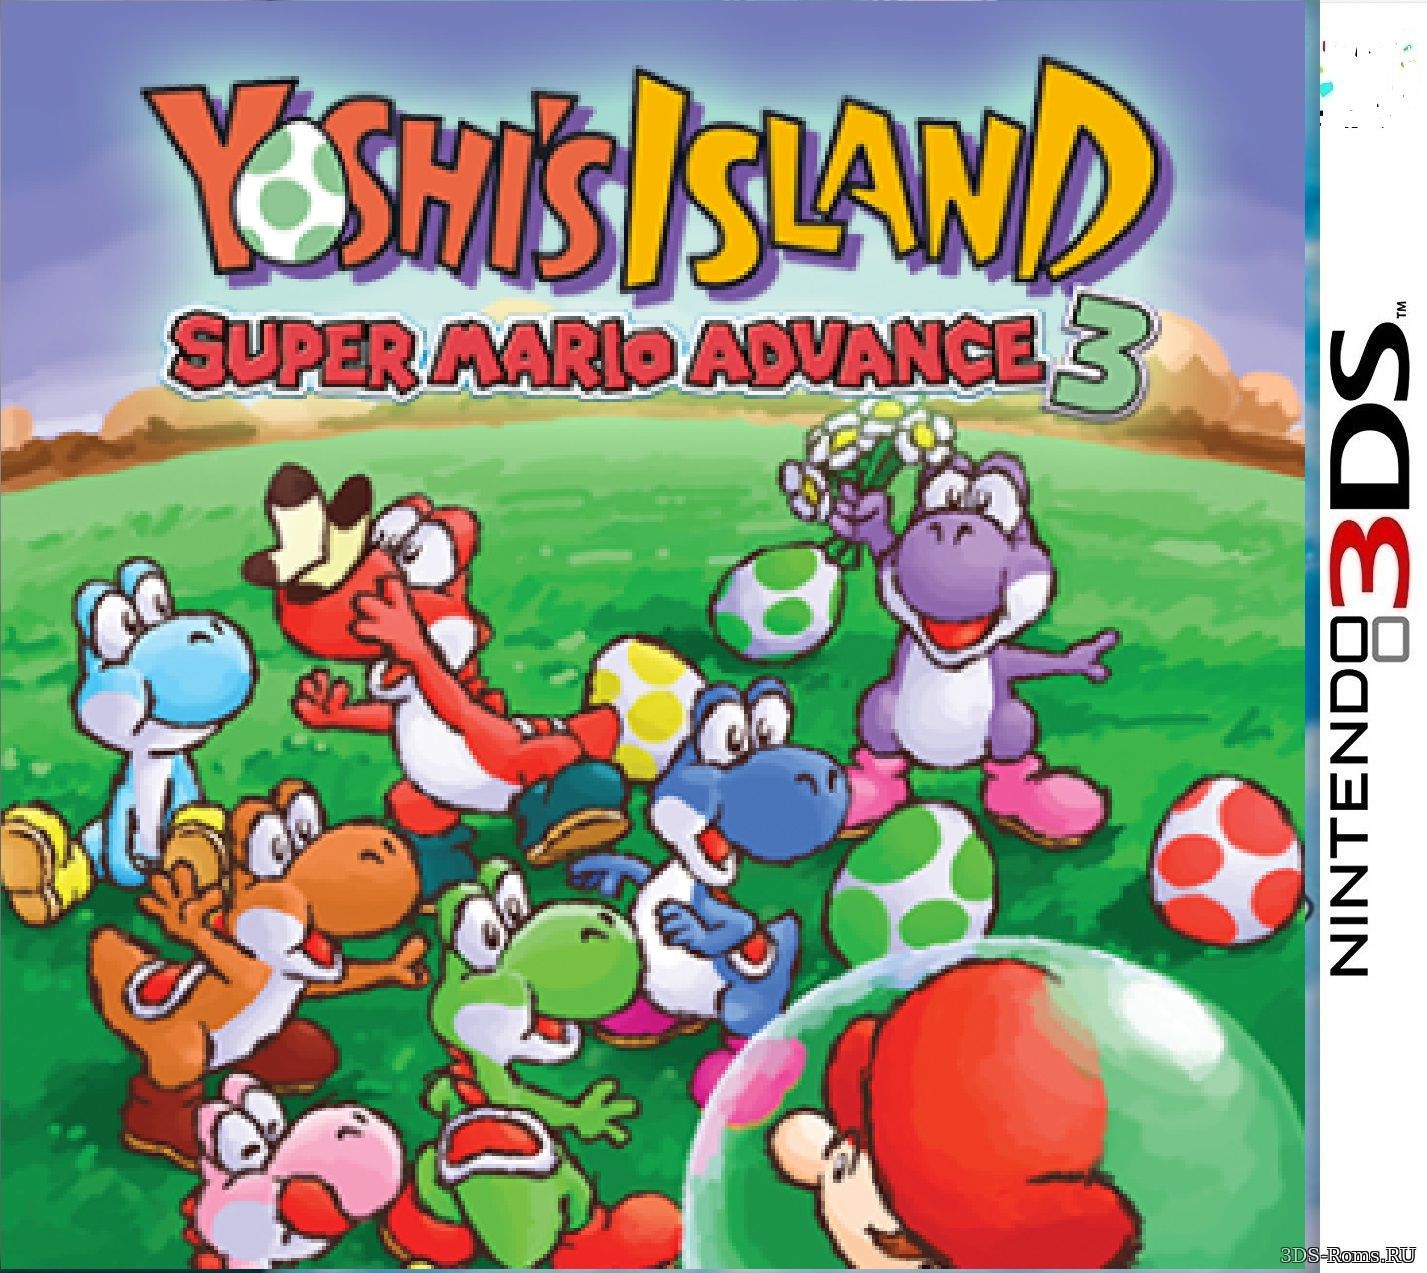 Mario yoshi island. Super Mario Advance 3 Yoshi's Island. Yoshi’s Island: super Mario Advance 3 обложка. Yoshi's Island GBA. Mario Yoshi Island 3.